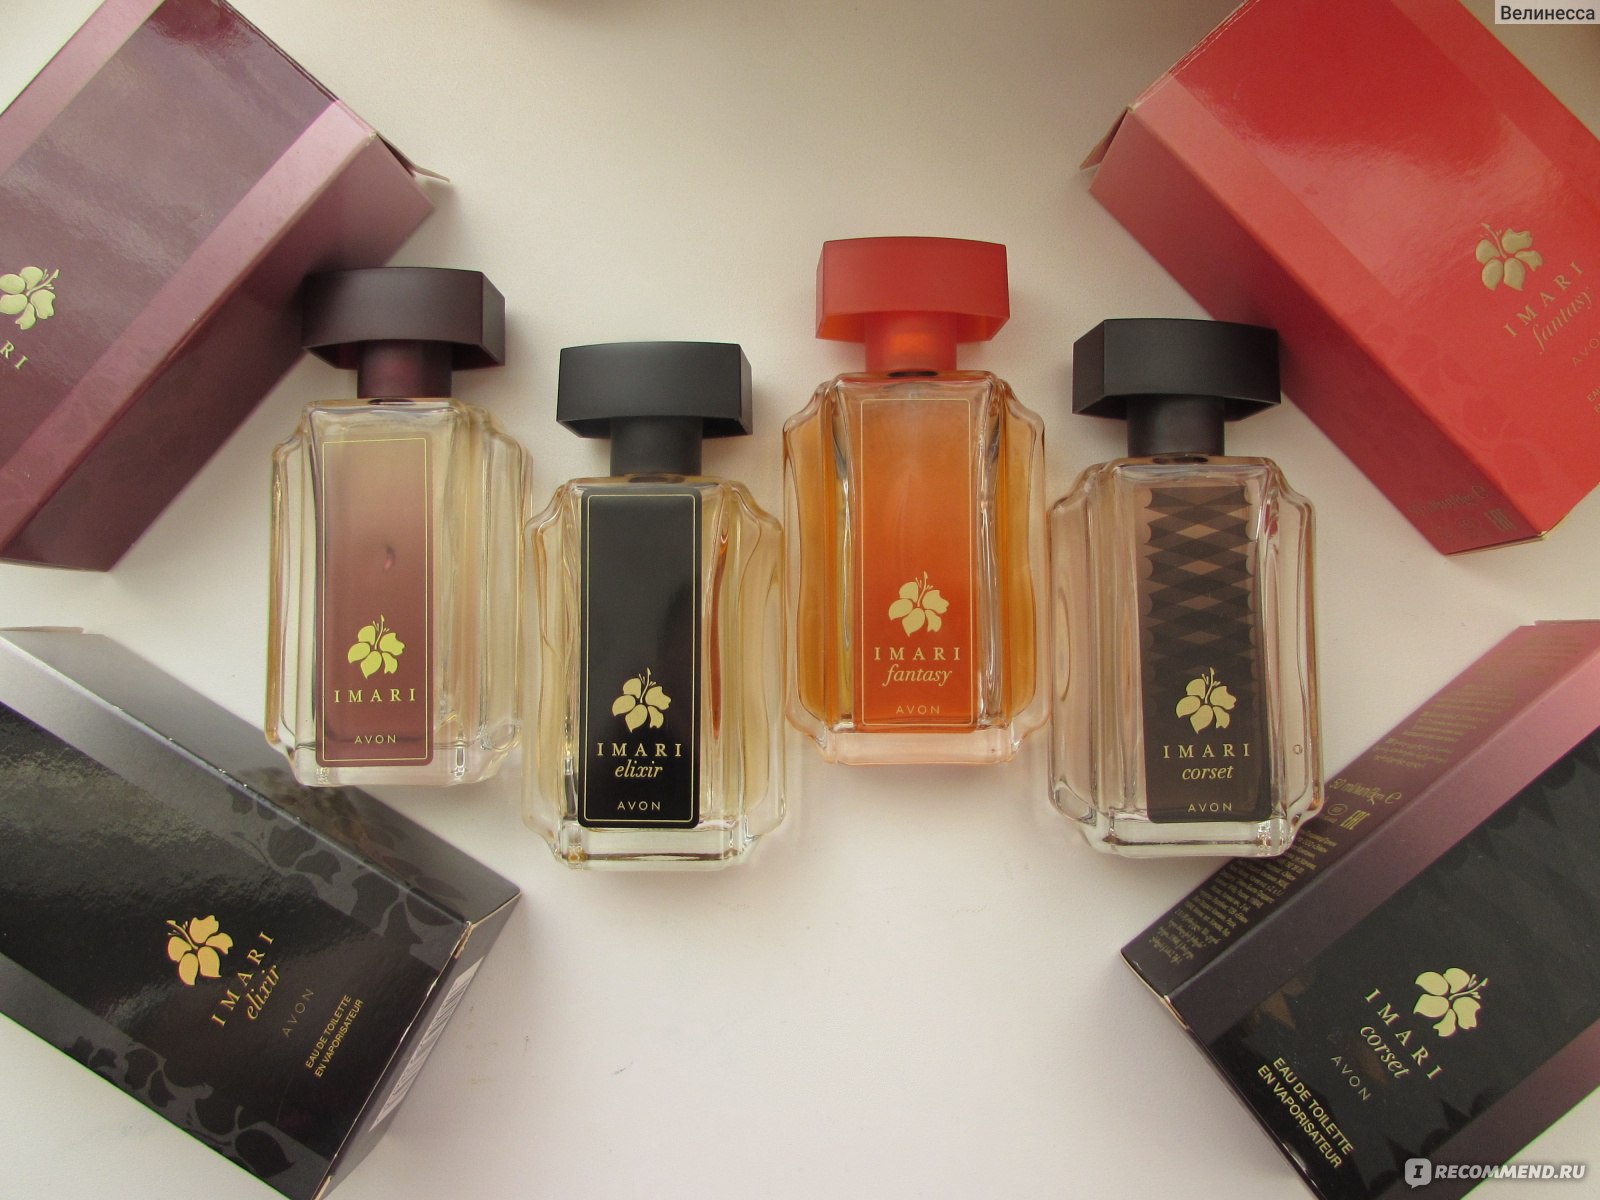 Сравнение всех ароматов Имари ( классический, Elixir, Fantasy, Corset)! 